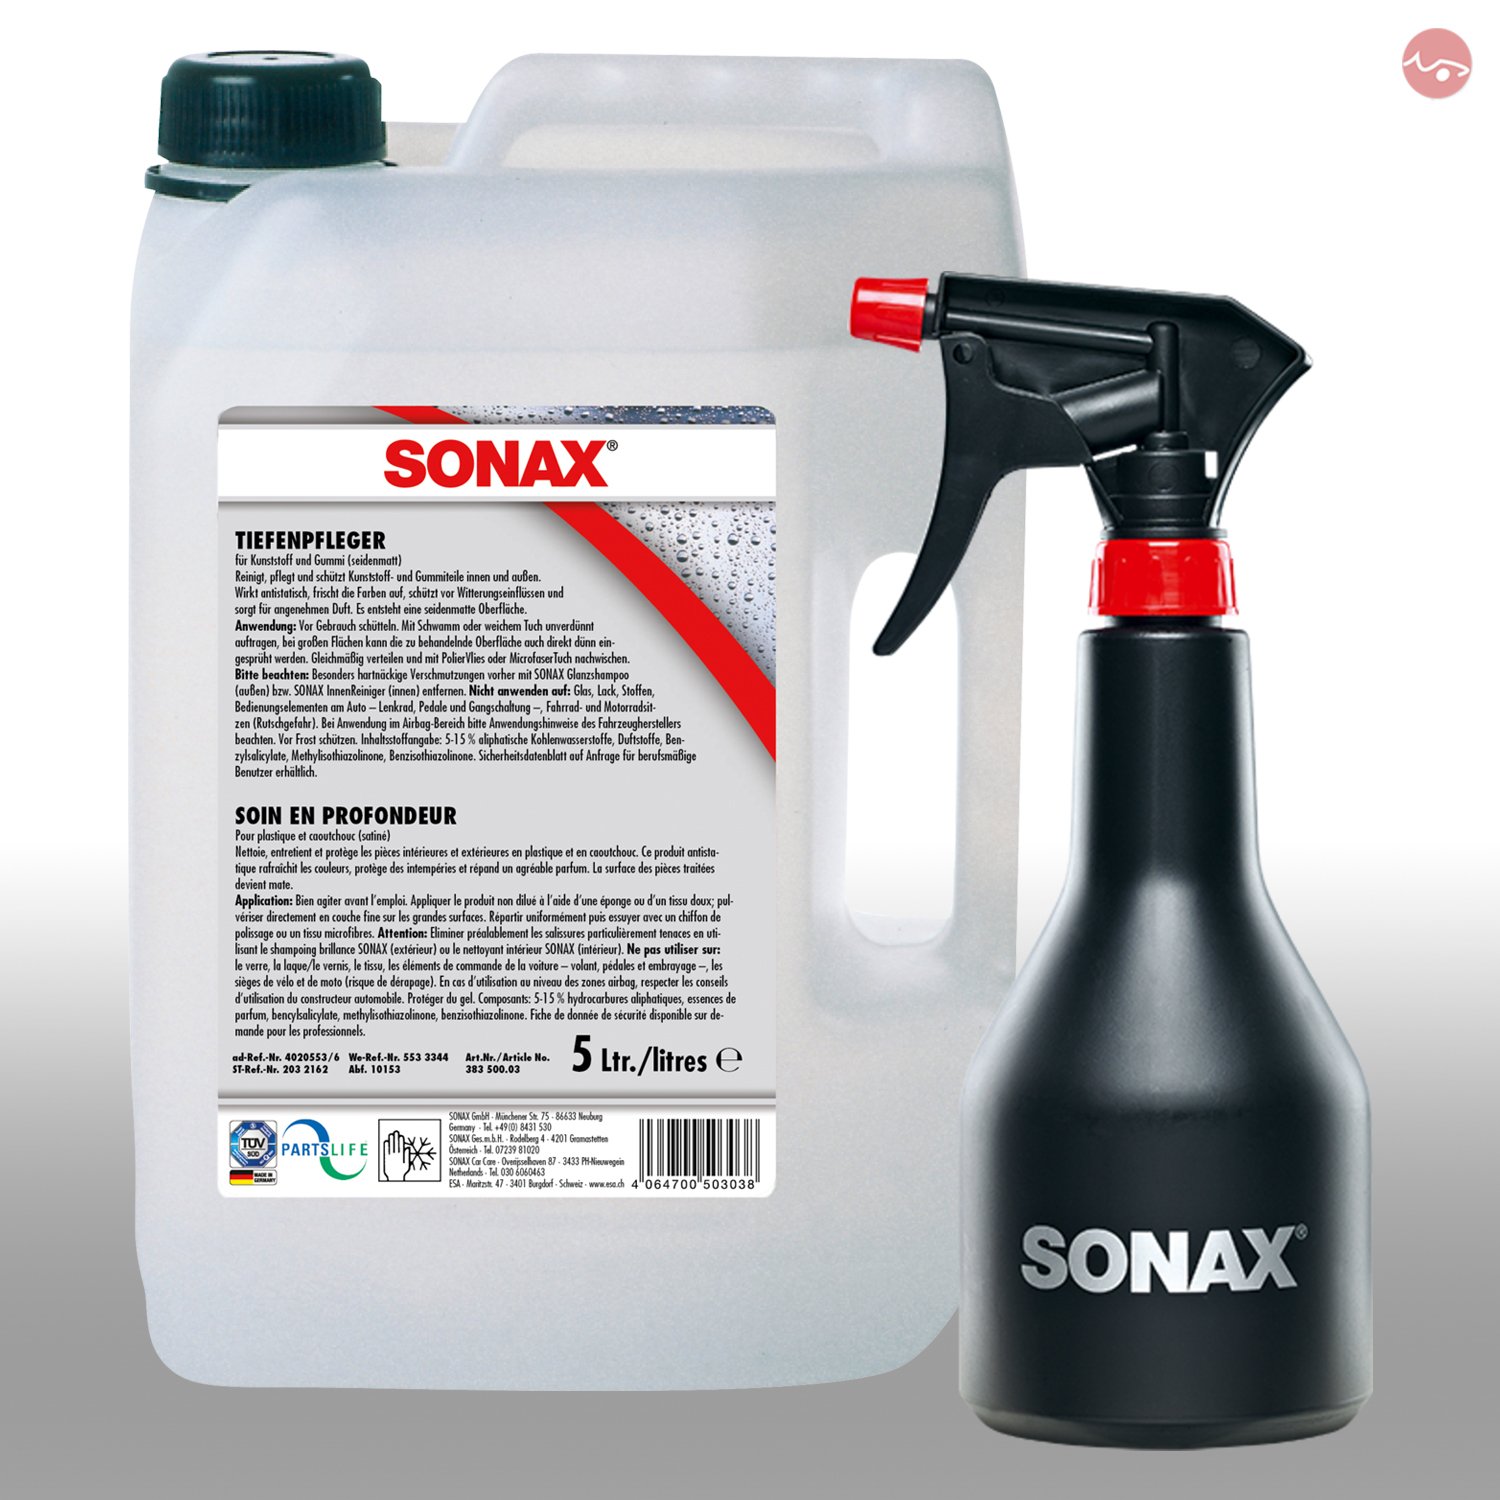 SONAX TiefenPfleger Seidenmatt 5 L 03835000 + GRATIS Sprühflasche 04997000 von SONAX